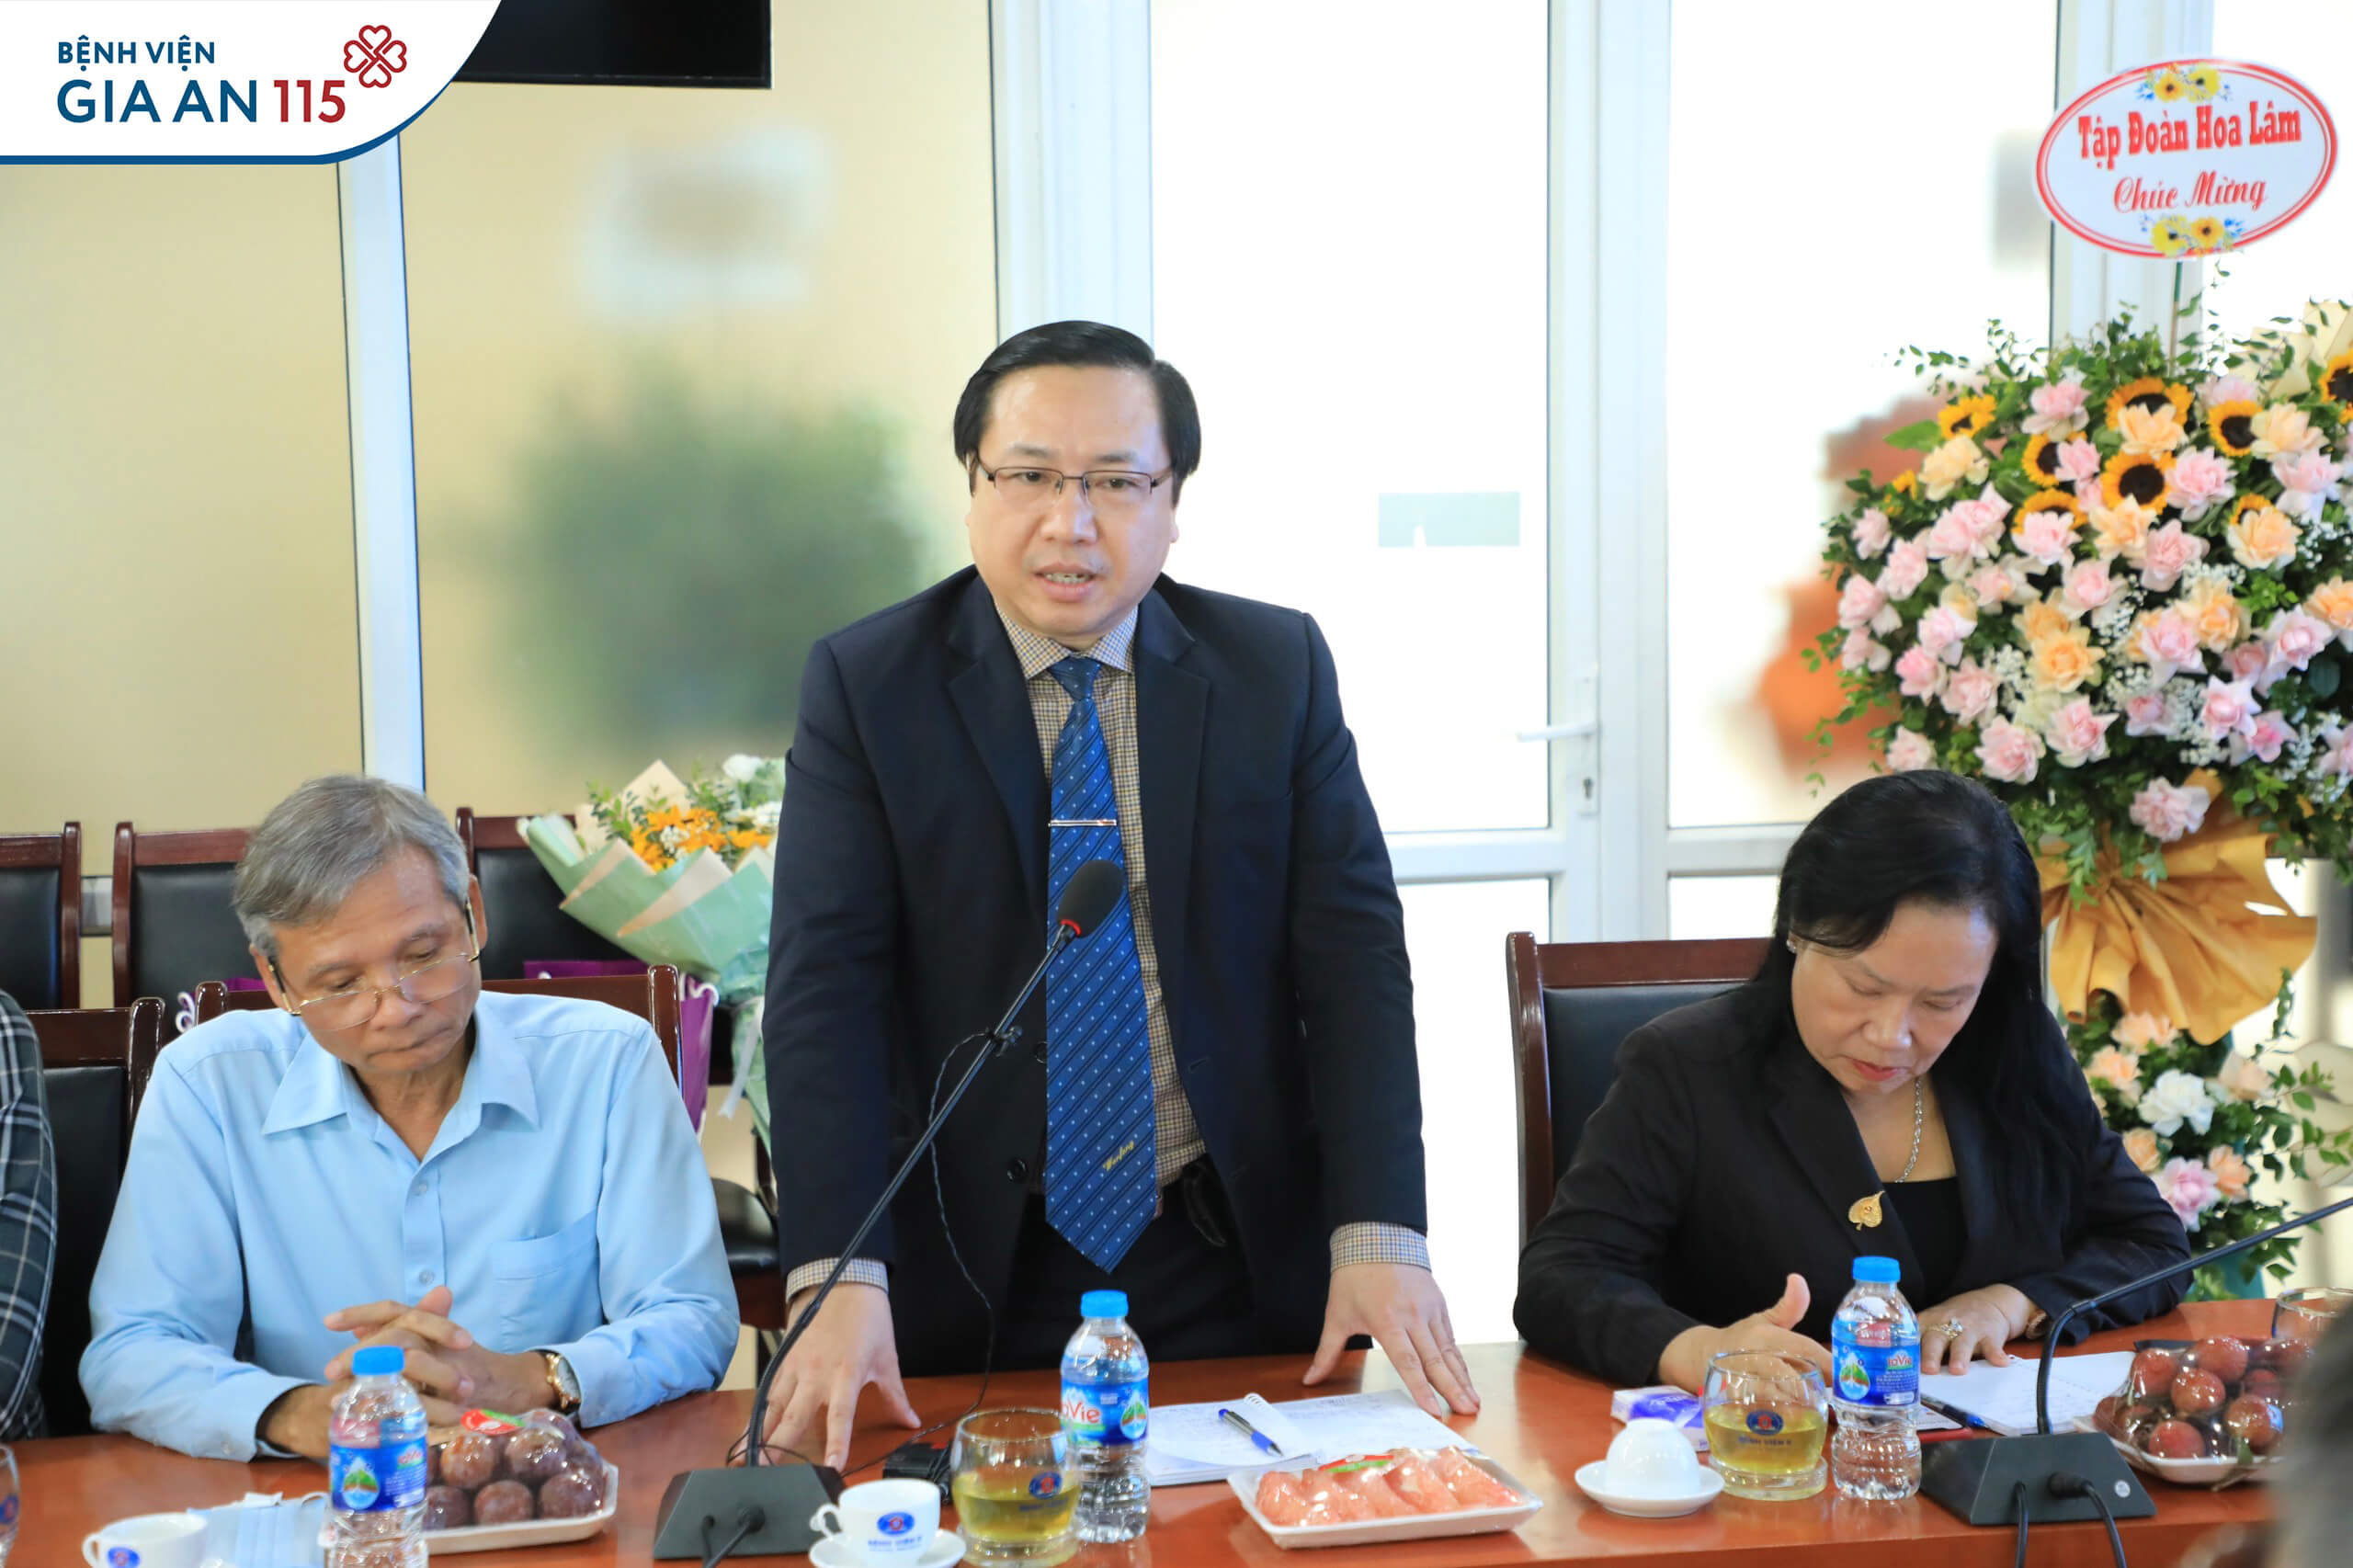 TS.BS Trương Vĩnh Long - Giám đốc Bệnh viện Gia An 115 phát biểu tại sự kiện